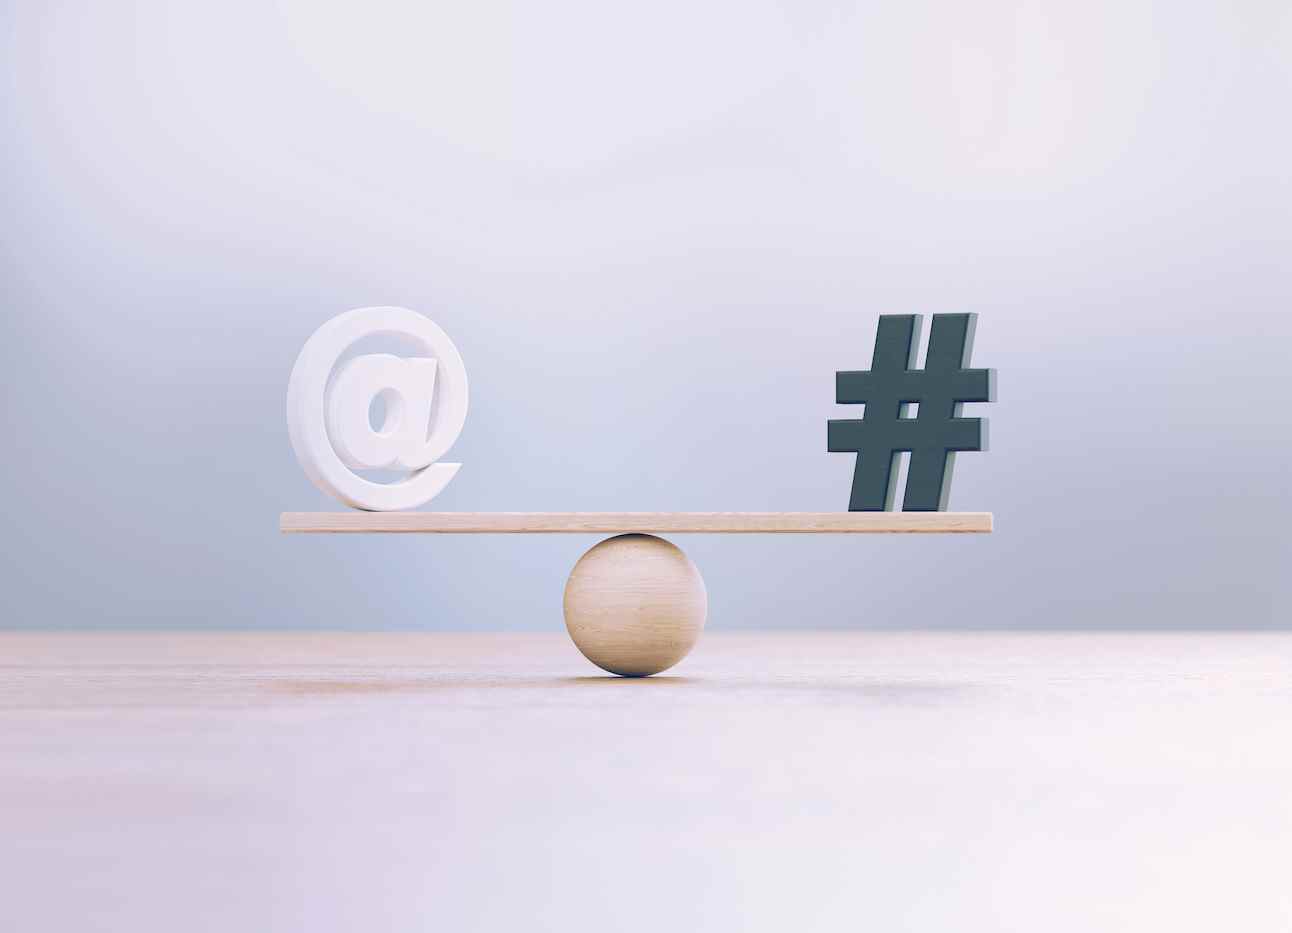 Symboles de hashtag blanc et noir assis sur une échelle de balançoire en bois avant un arrière-plan défocalisé.